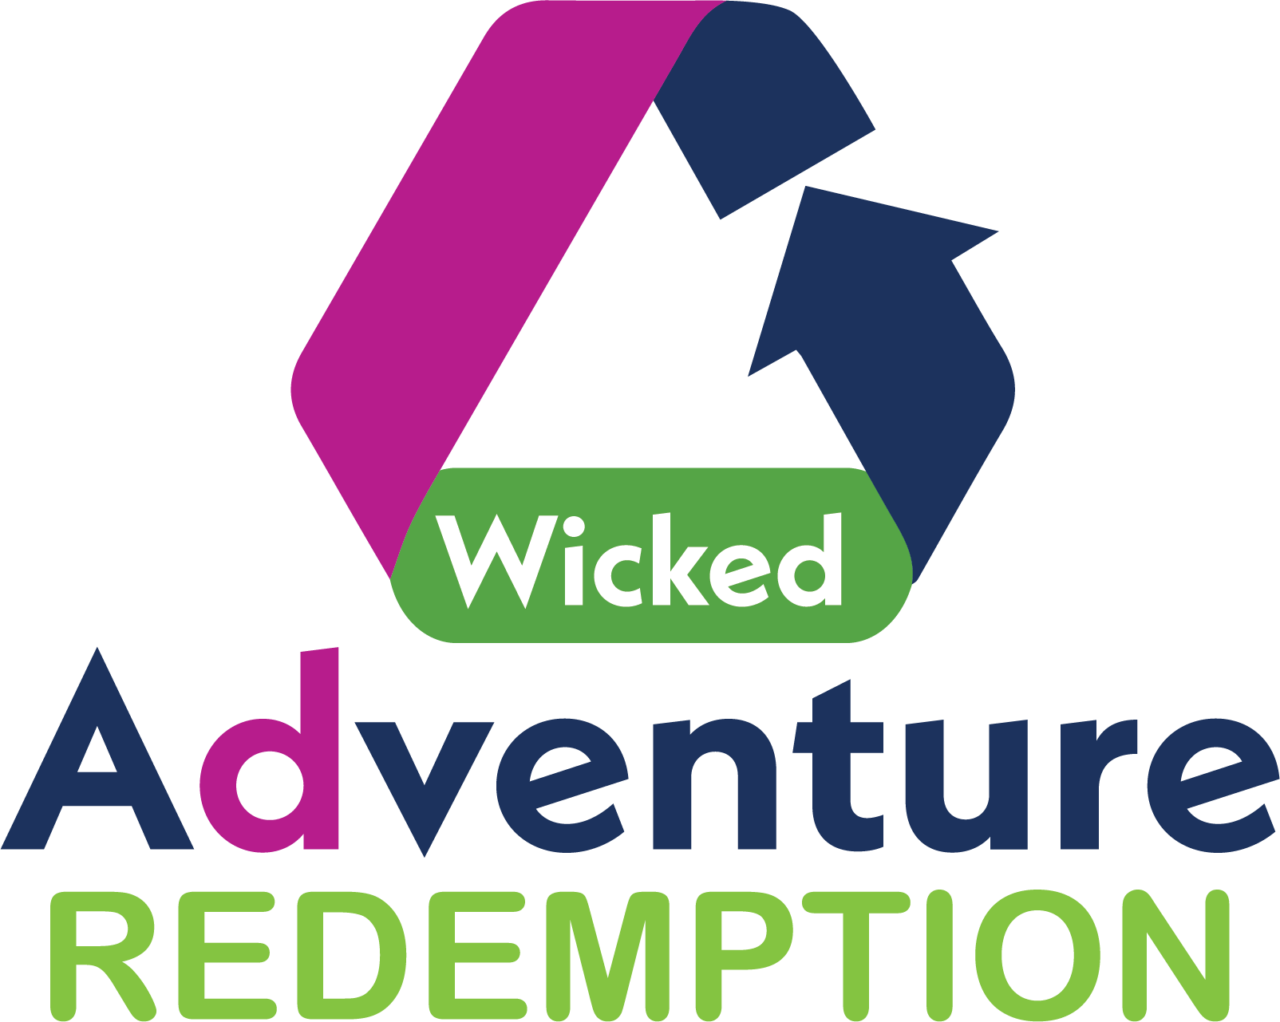 Wicked Adventure Redemption